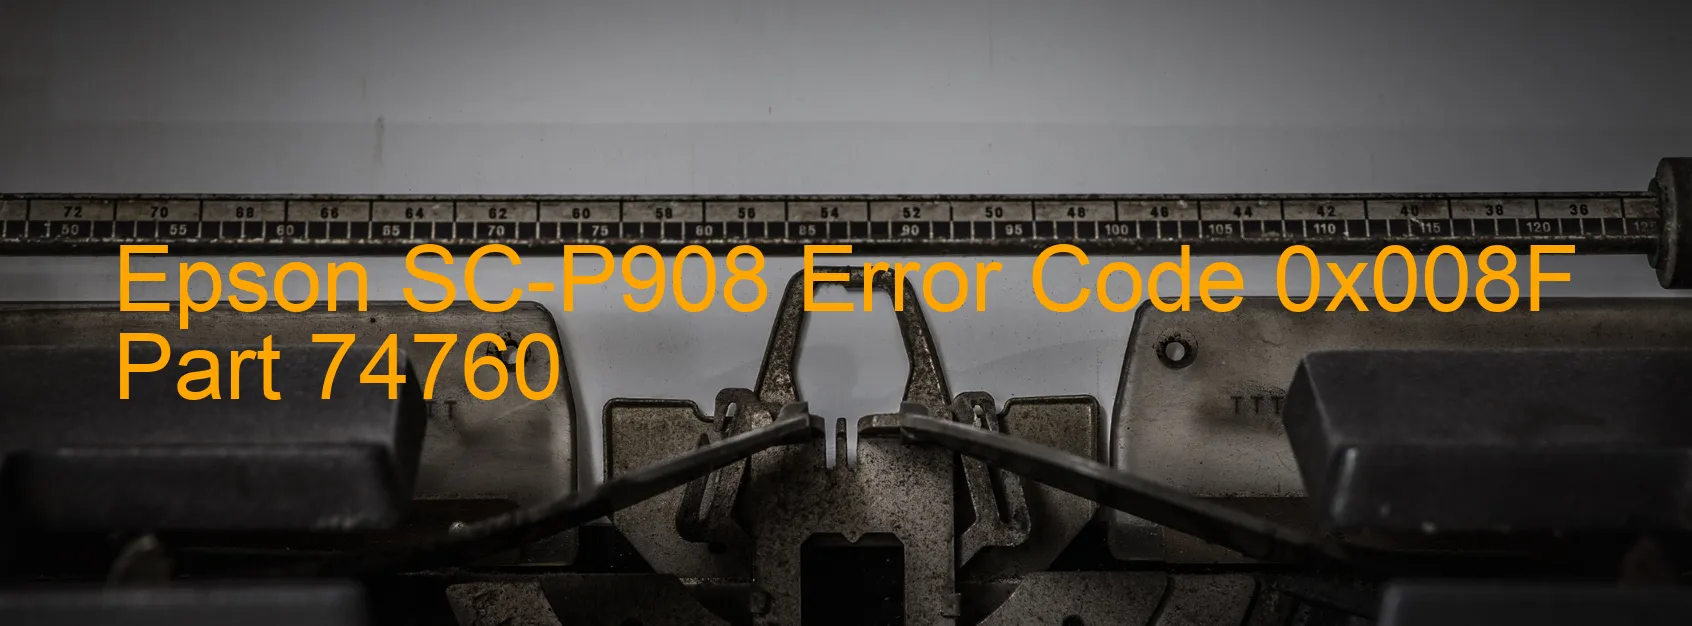 Epson SC-P908 Error Code 0x008F Part 74760